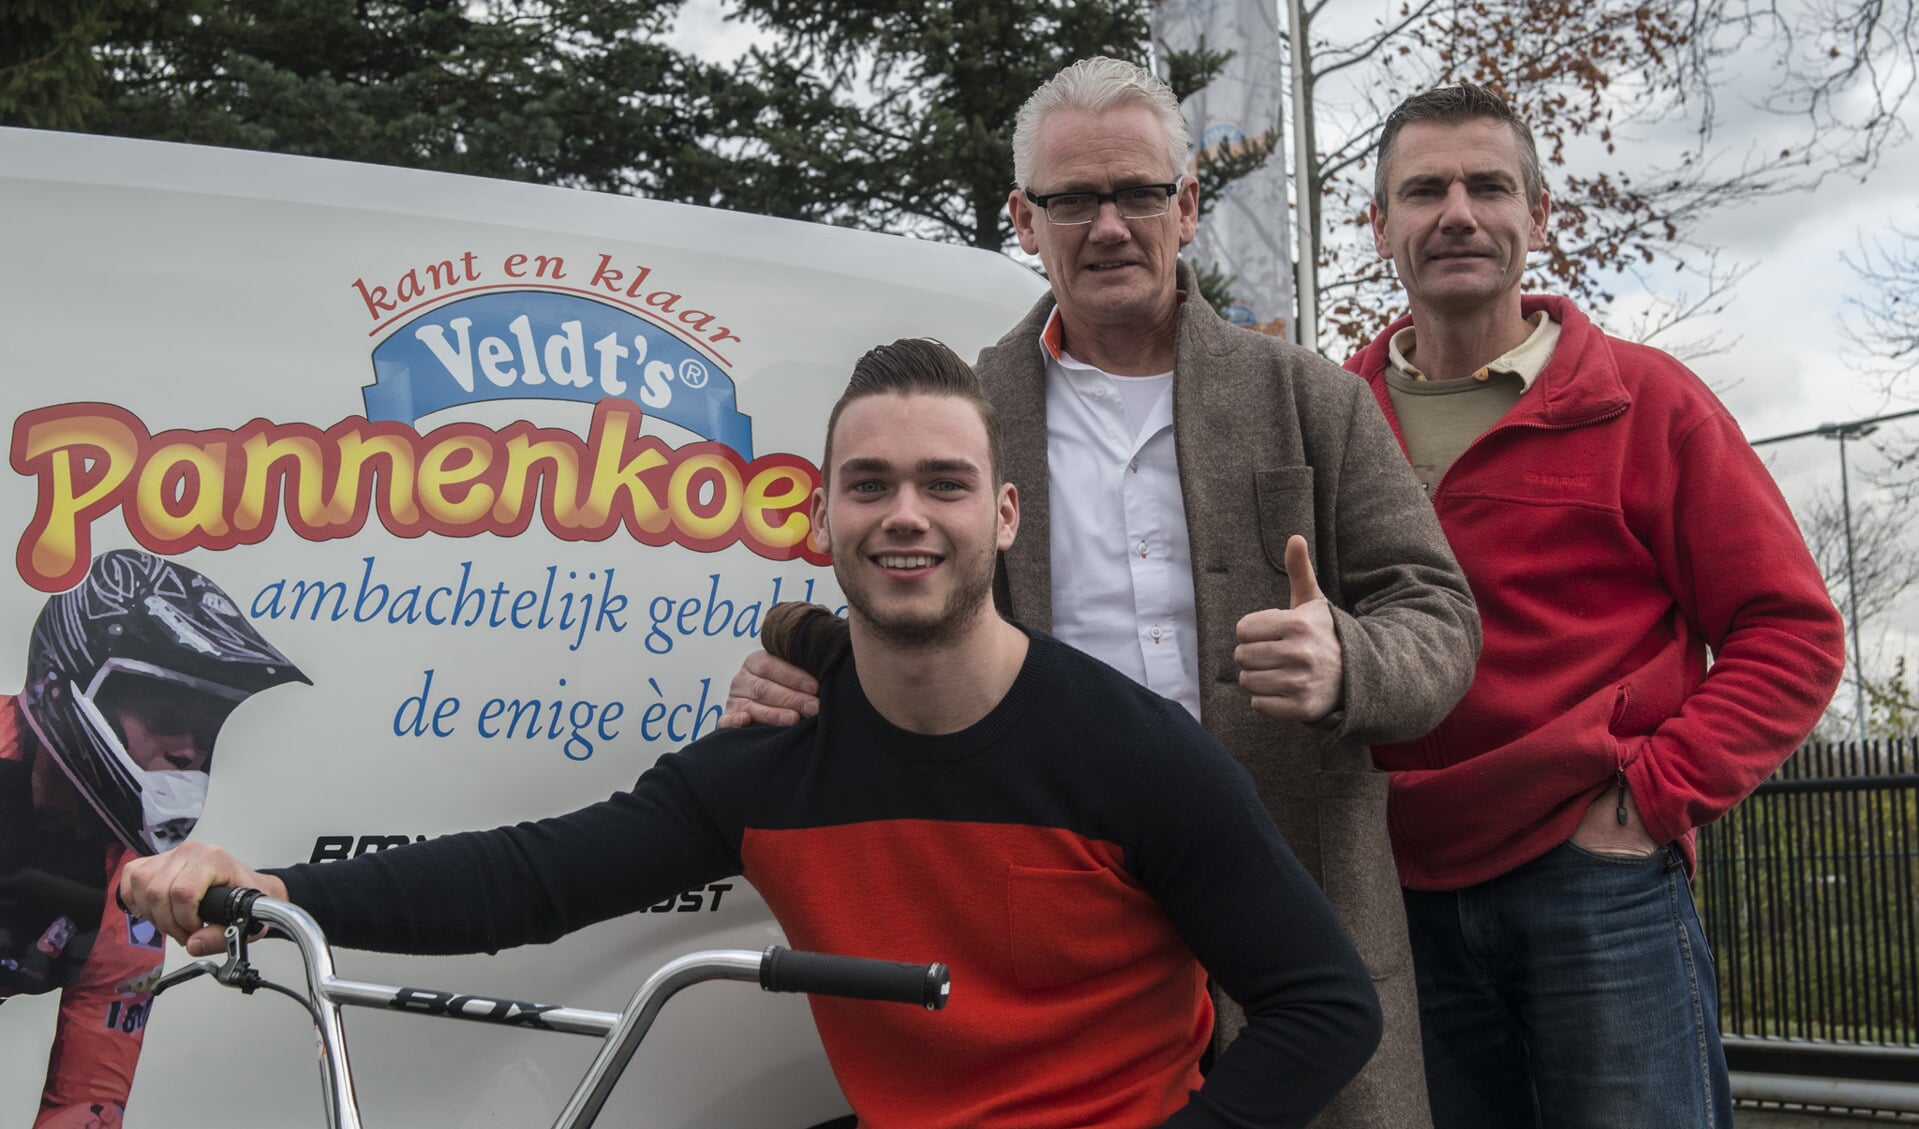 Koen en zijn sponsoren van Veldt's pannenkoeken.